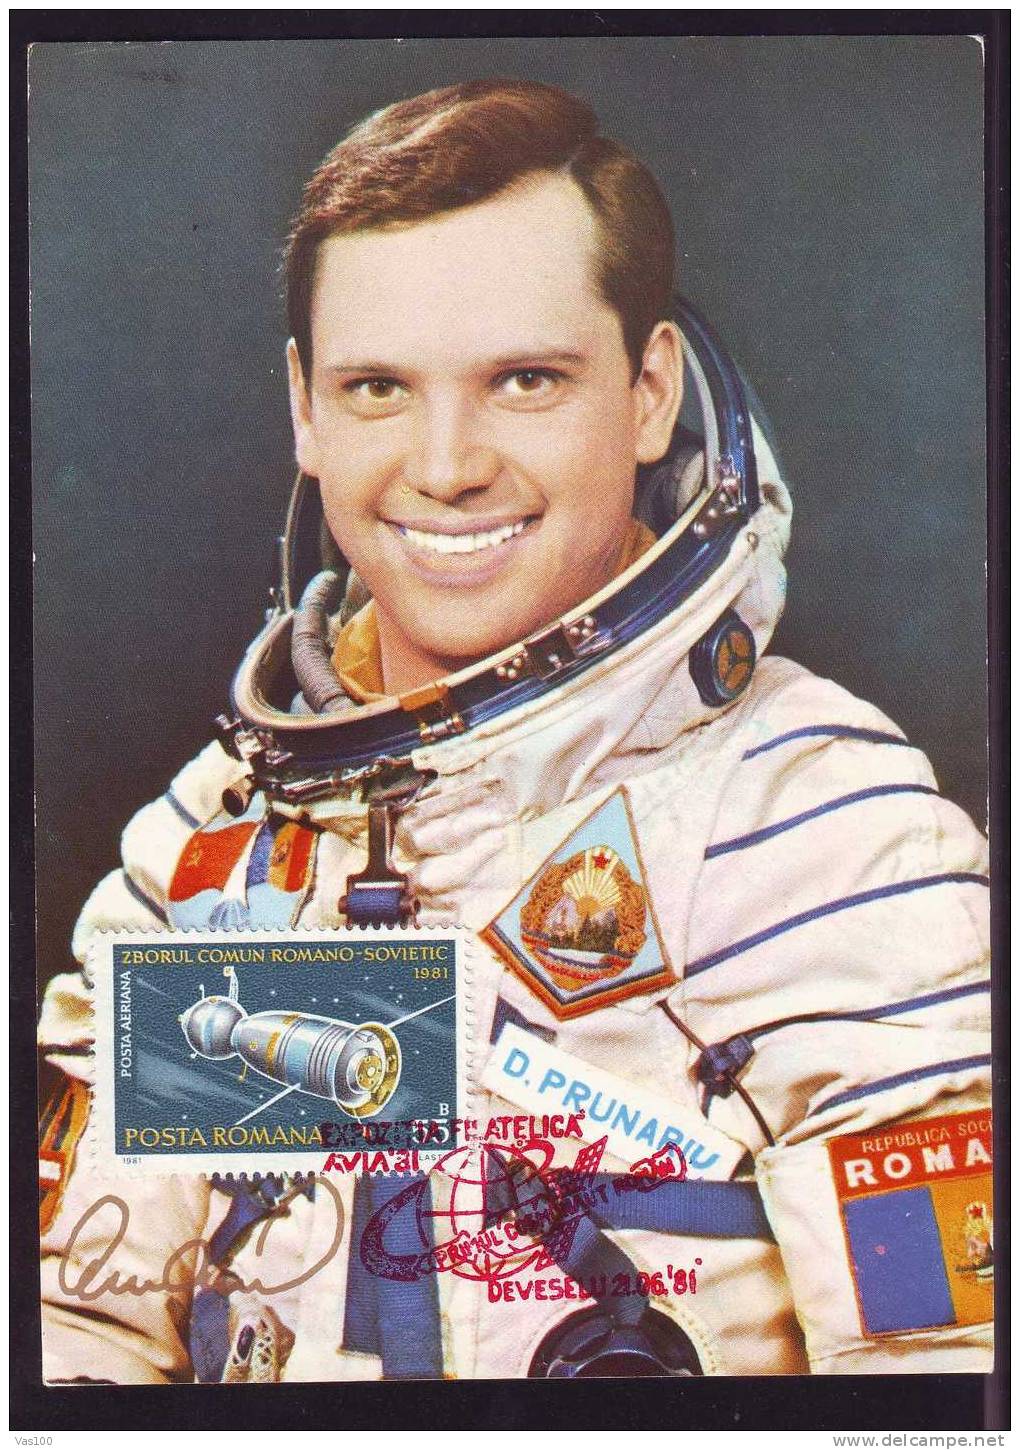 Space Mission Rocket Cosmos,Prunariu First Romanian In Space,Maximum Card,1981  Deveselu-Romania. - Europe